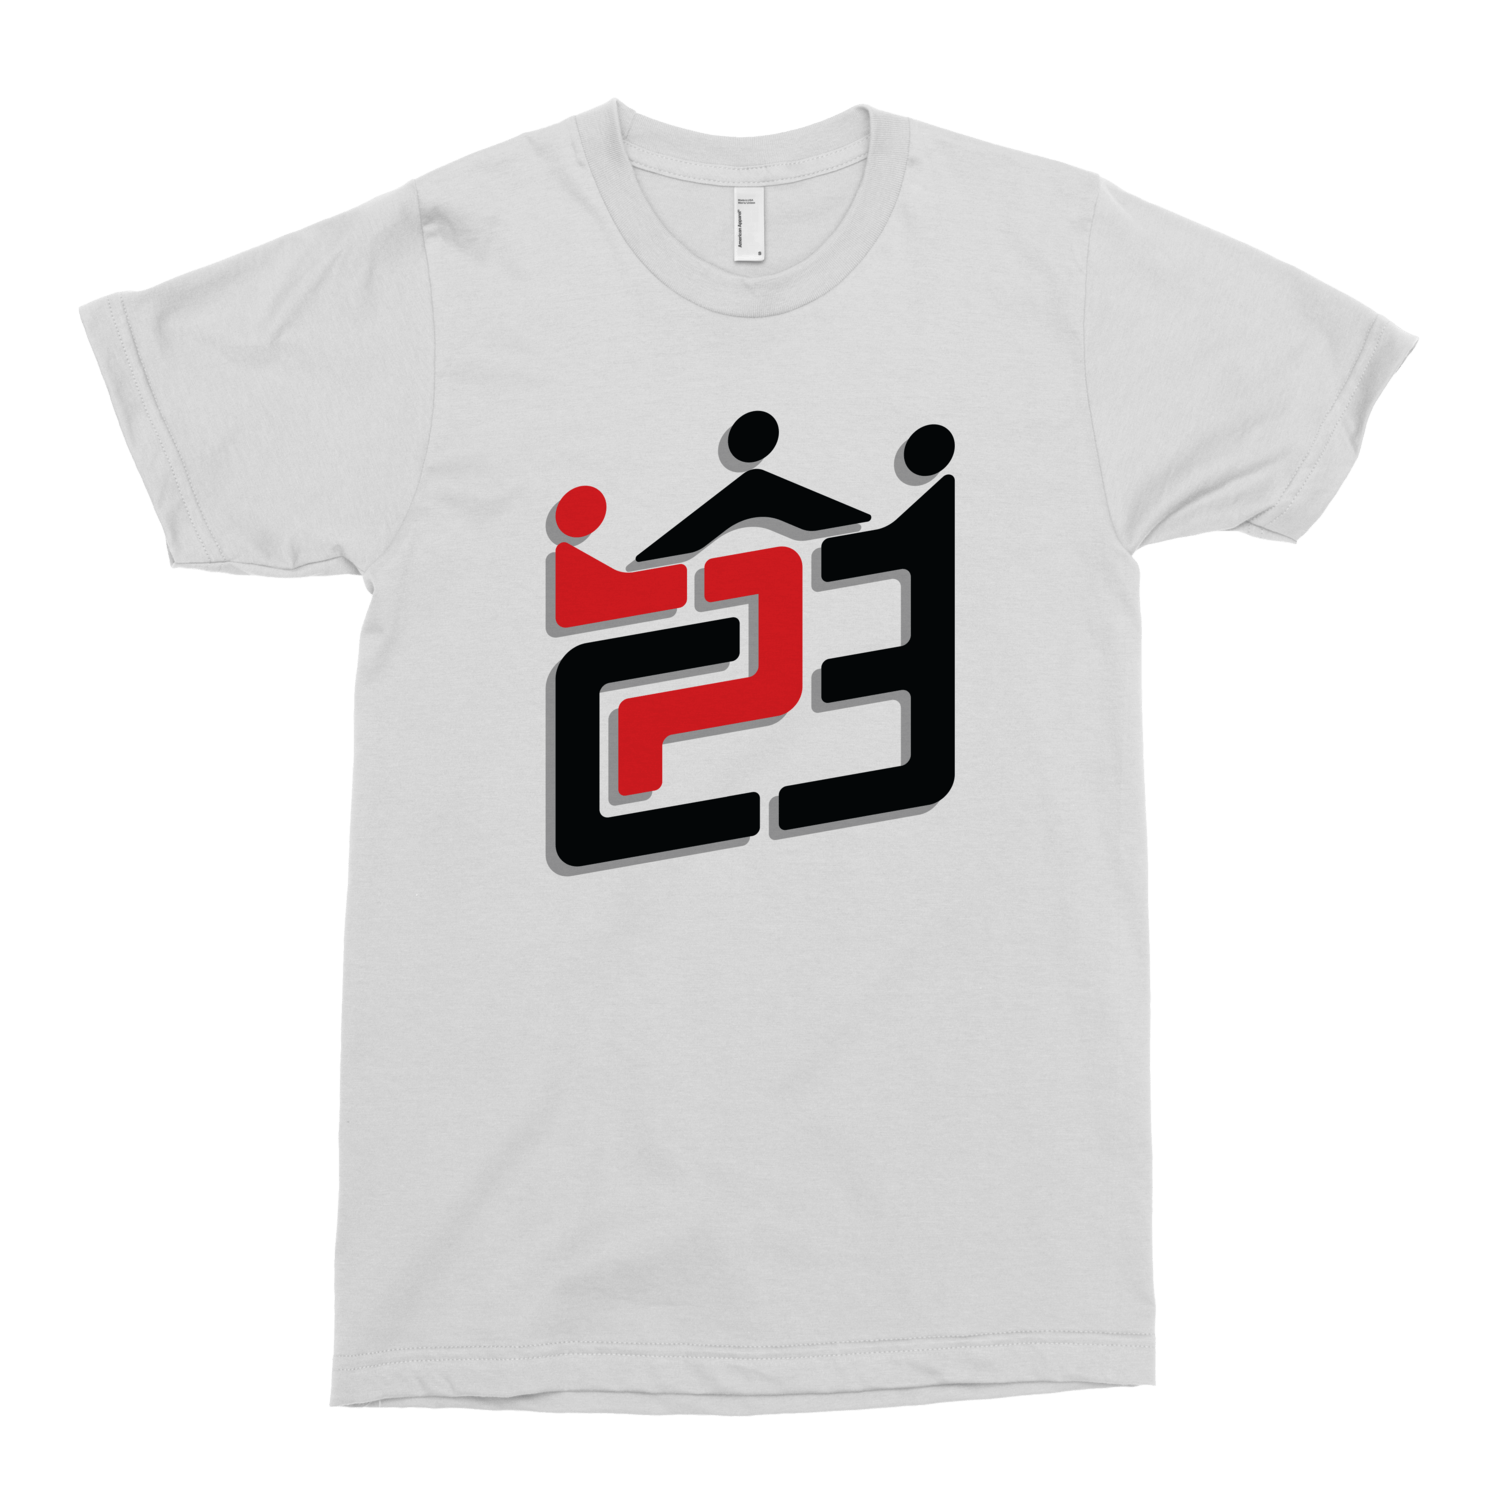 CP3 Logo - Chris Paul (CP3)